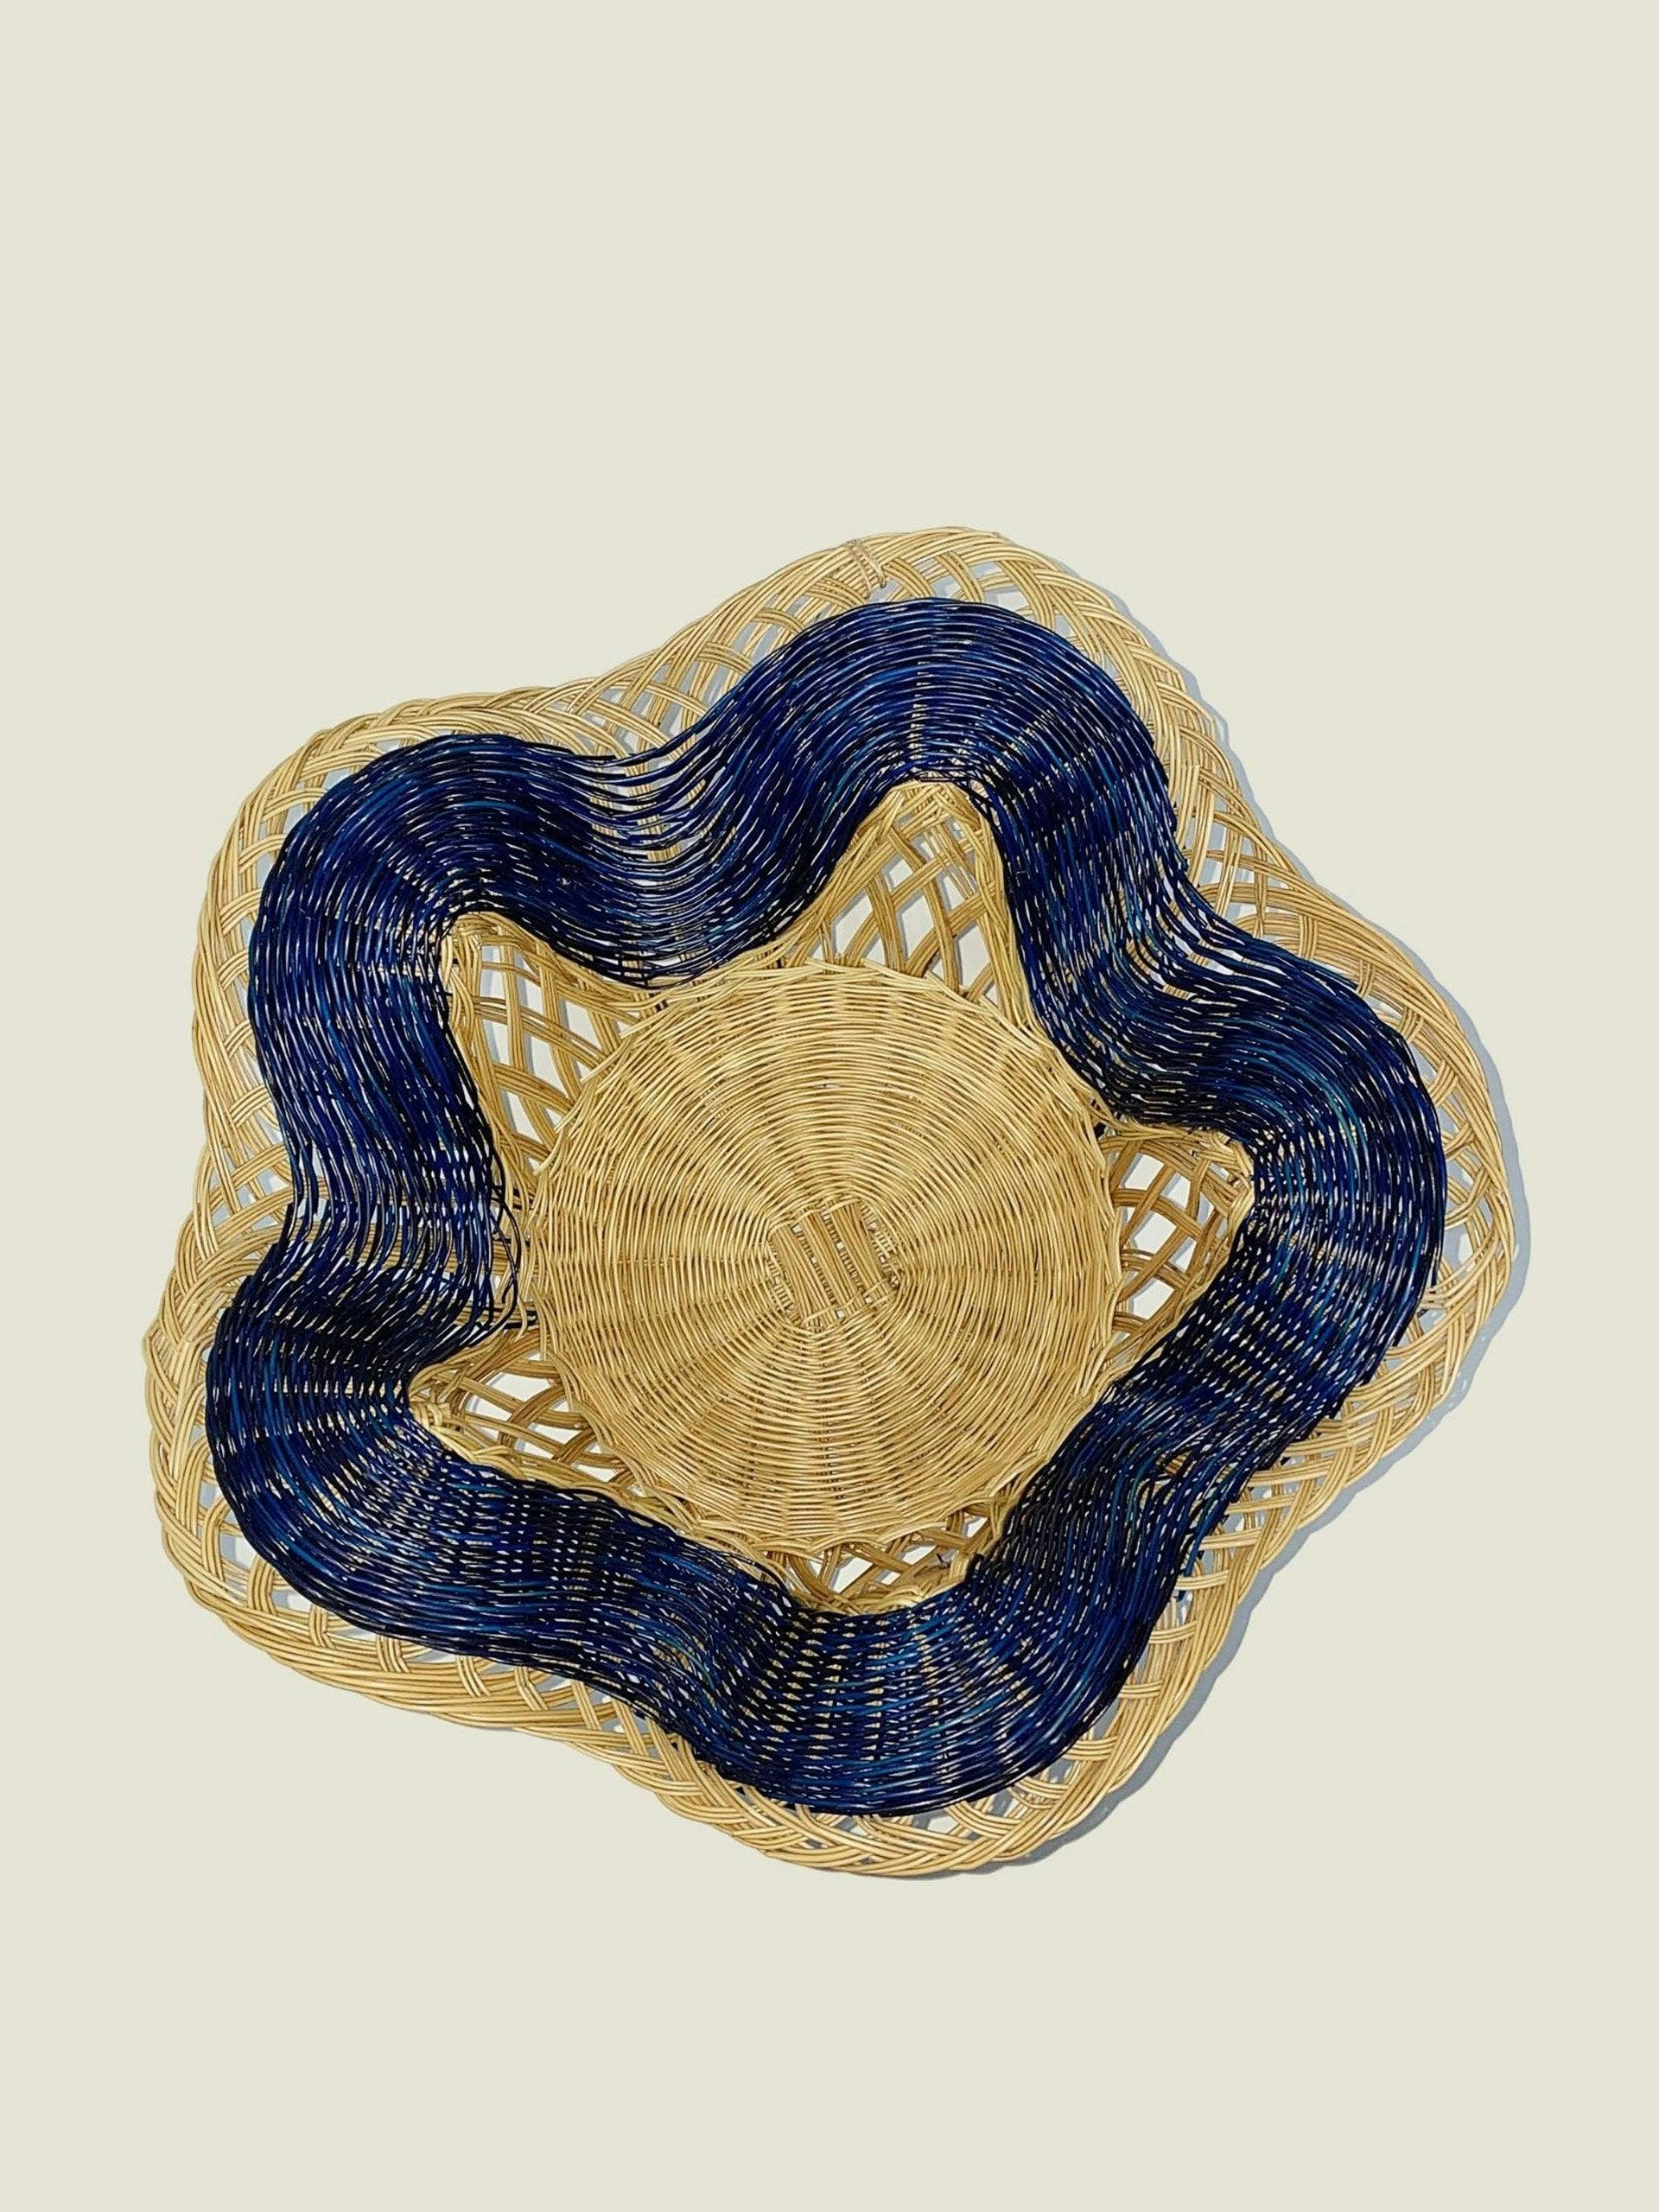 Boyacá scalloped woven bowl